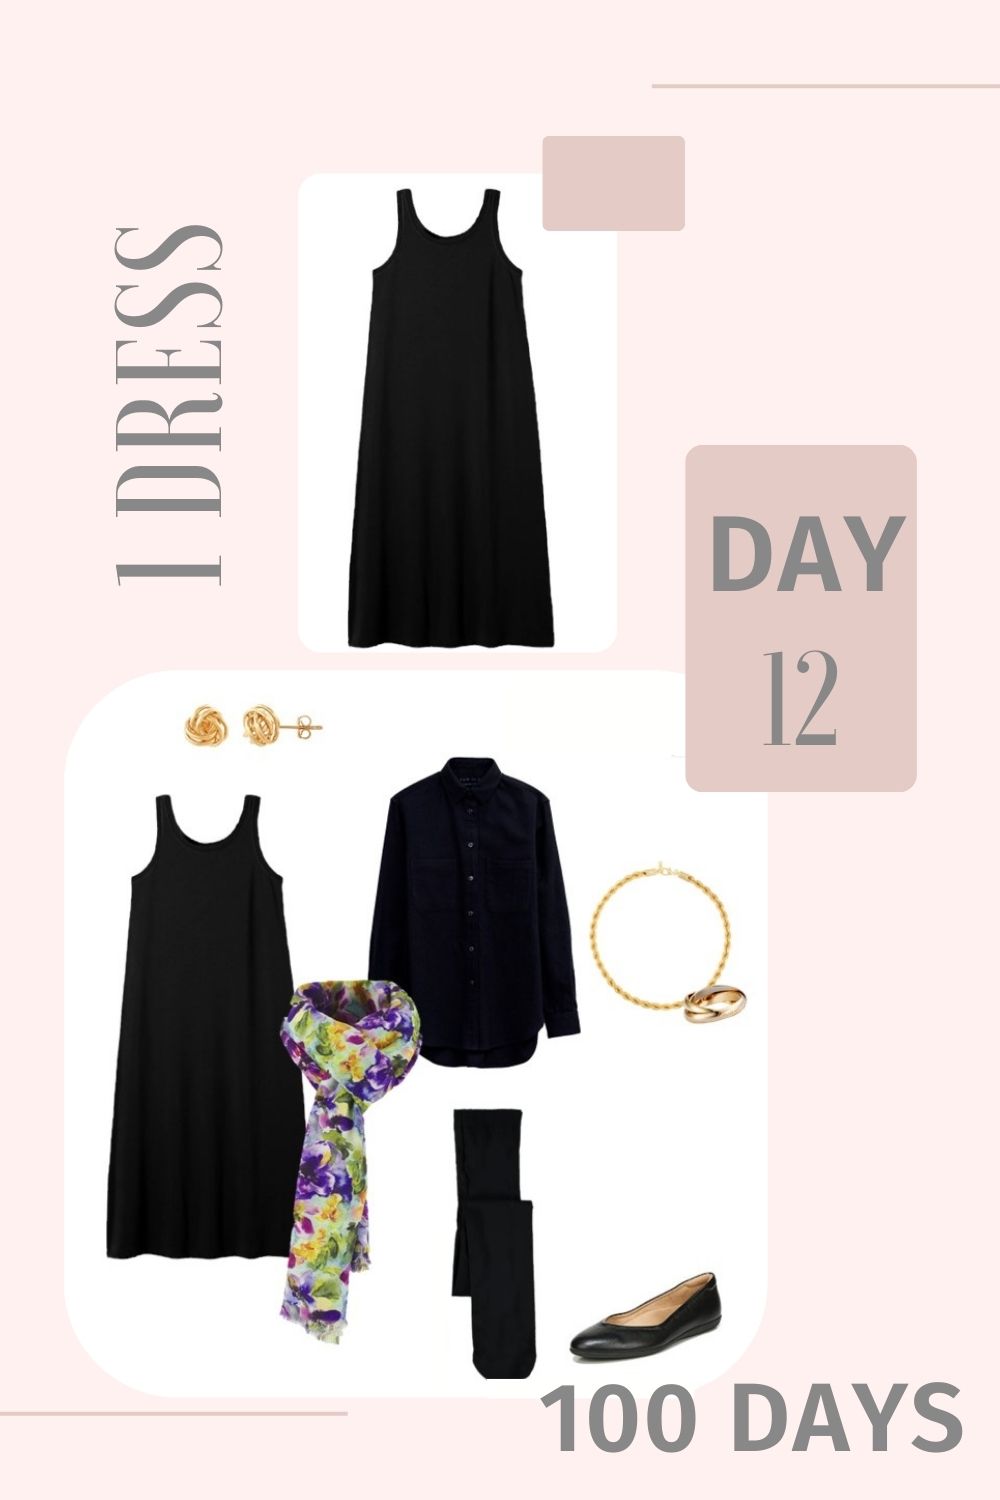 1 Dress 100 Days - Day 12